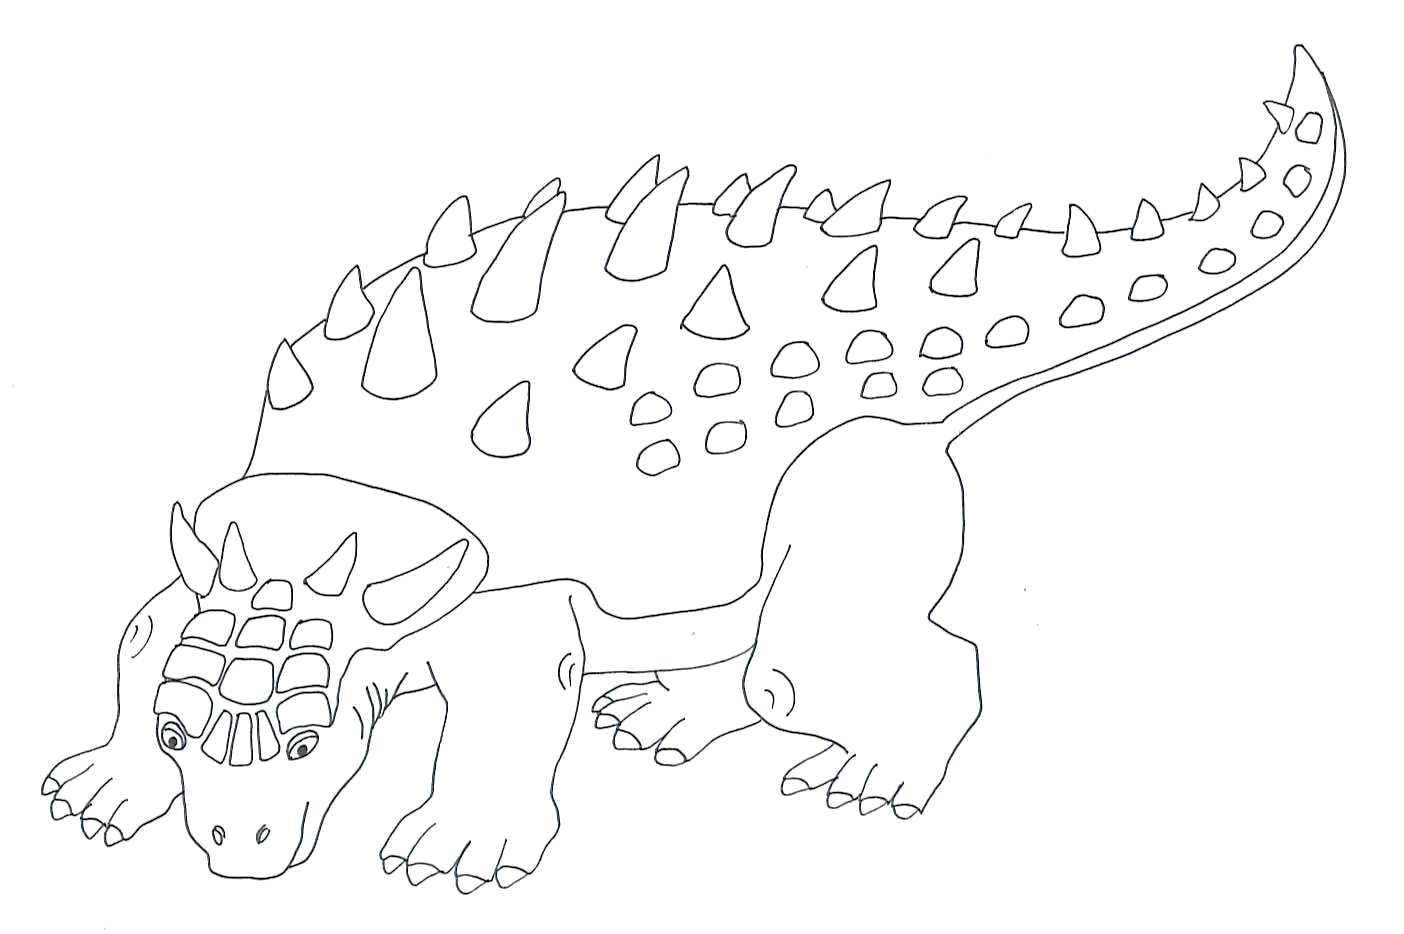 Coloring Ankylosaurus. Category dinosaur. Tags:  Dinosaurs.